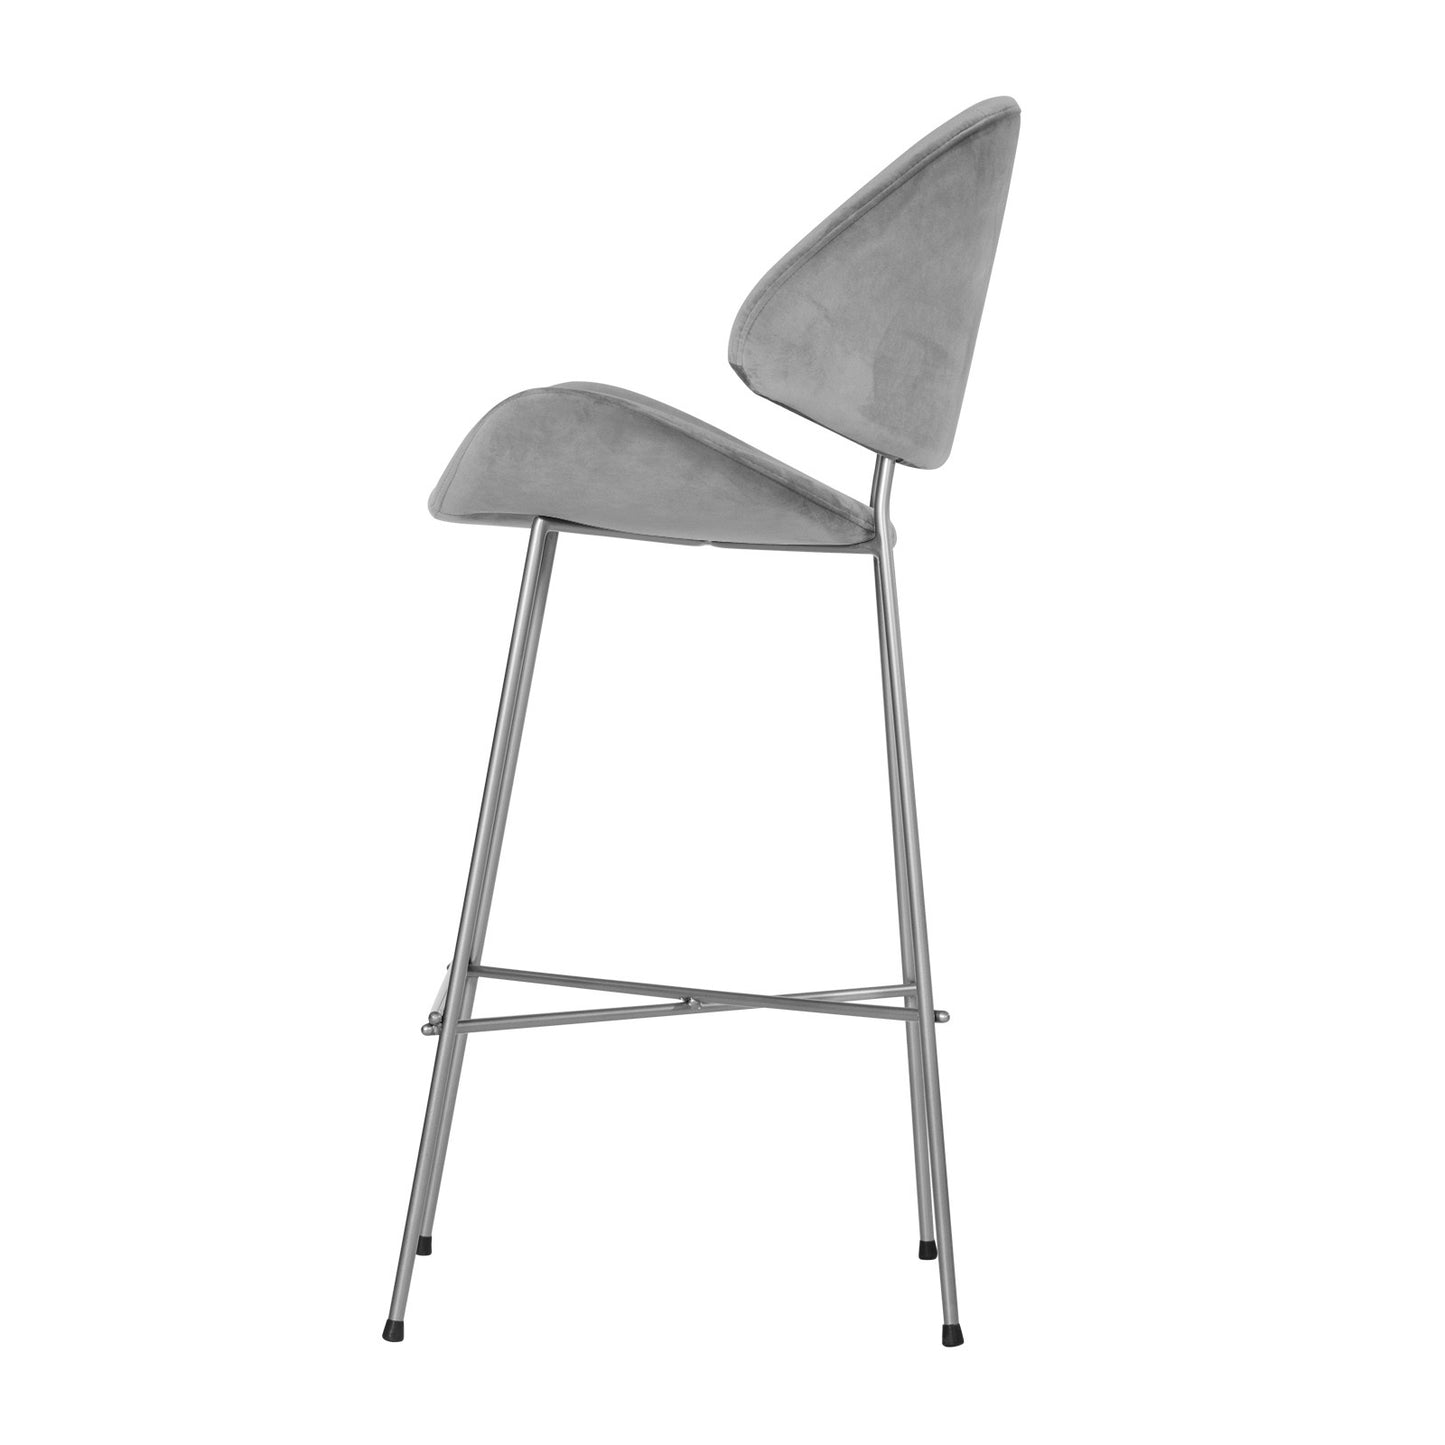 Bar stool Cheri Bar Velours Chrome High - Light Grey